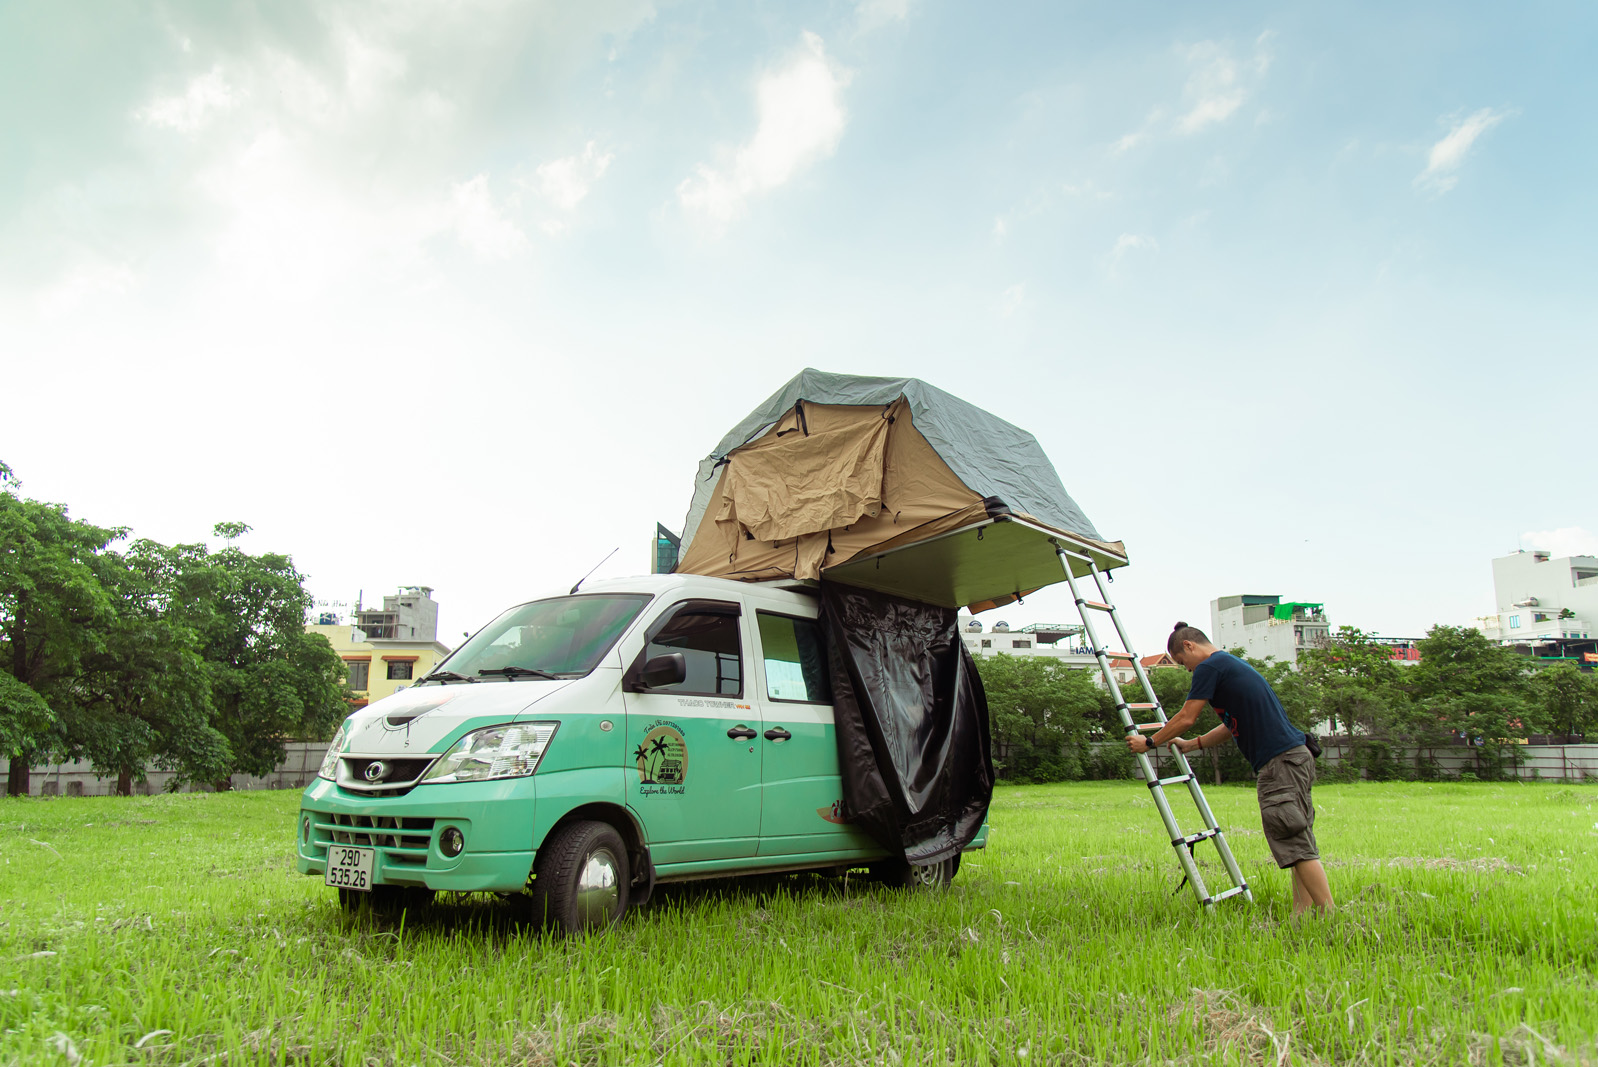 Bán Triton mua xe van THACO hơn 300 triệu độ camping chạy Bắc Nam hơn 18.000km, chủ xe trải lòng: 'Vui, tiện nhưng đi xa hơi cực' - Ảnh 9.